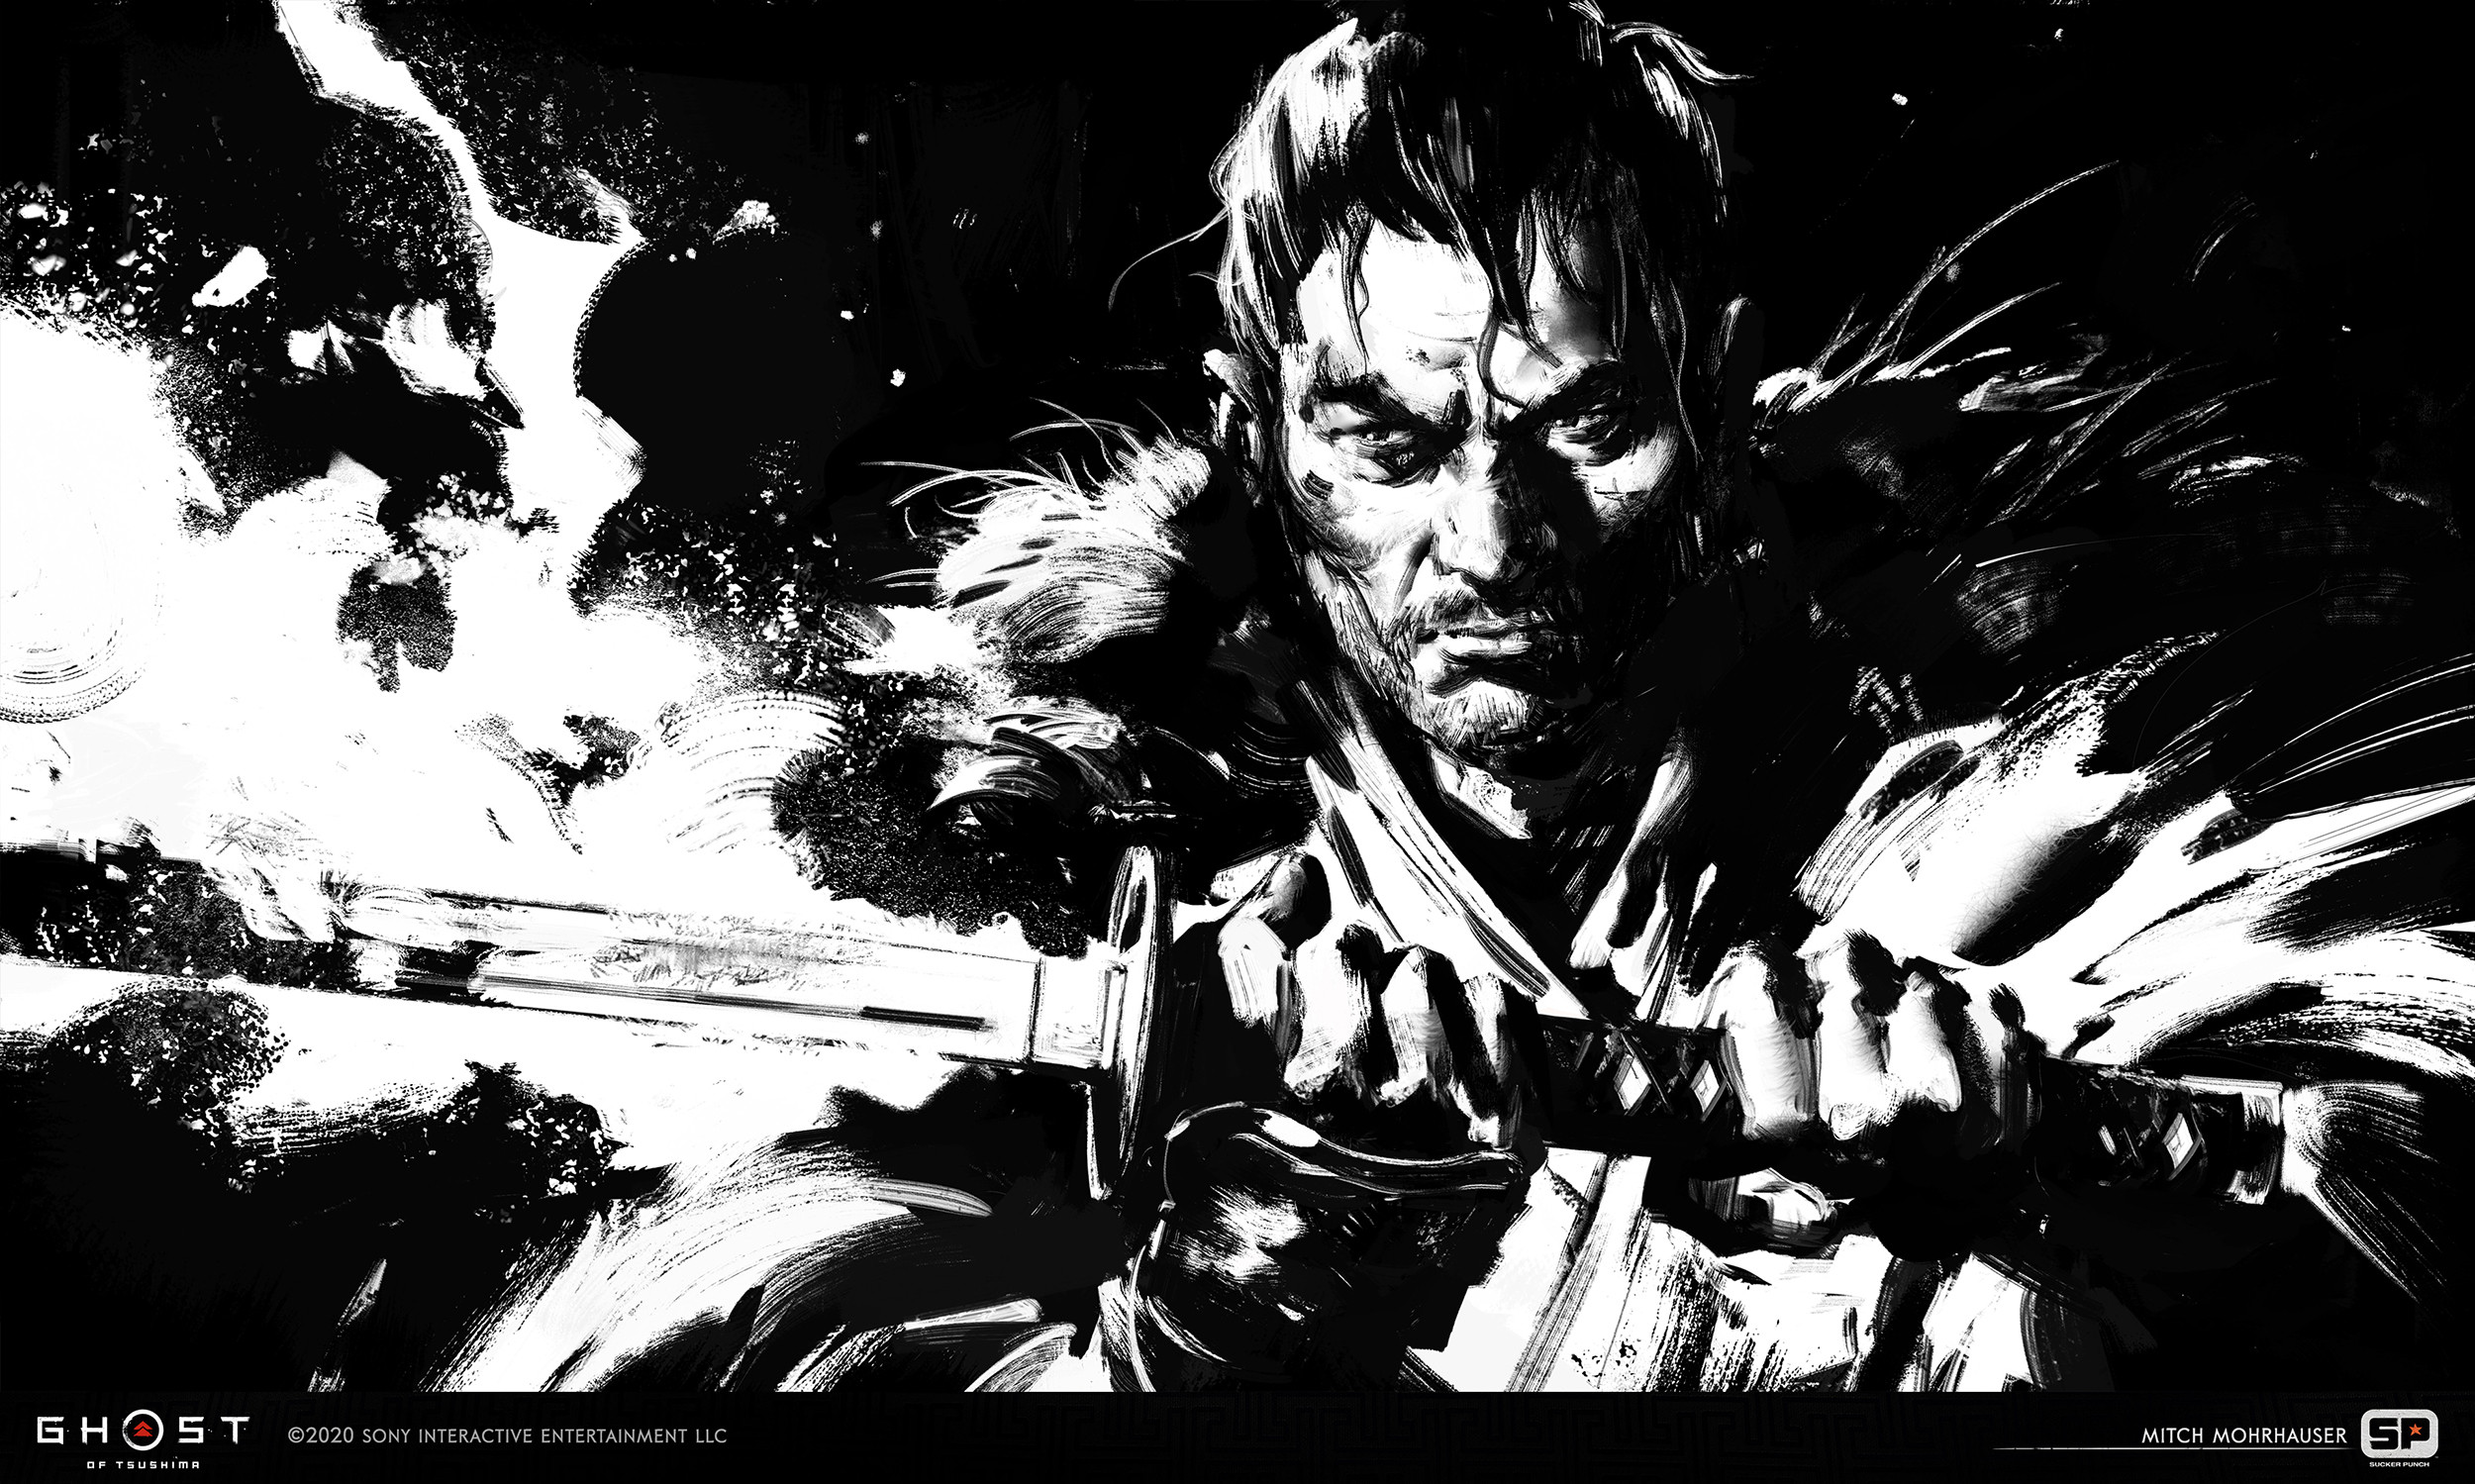 samurai, ghost of tsushima, video game, black & white, jin sakai